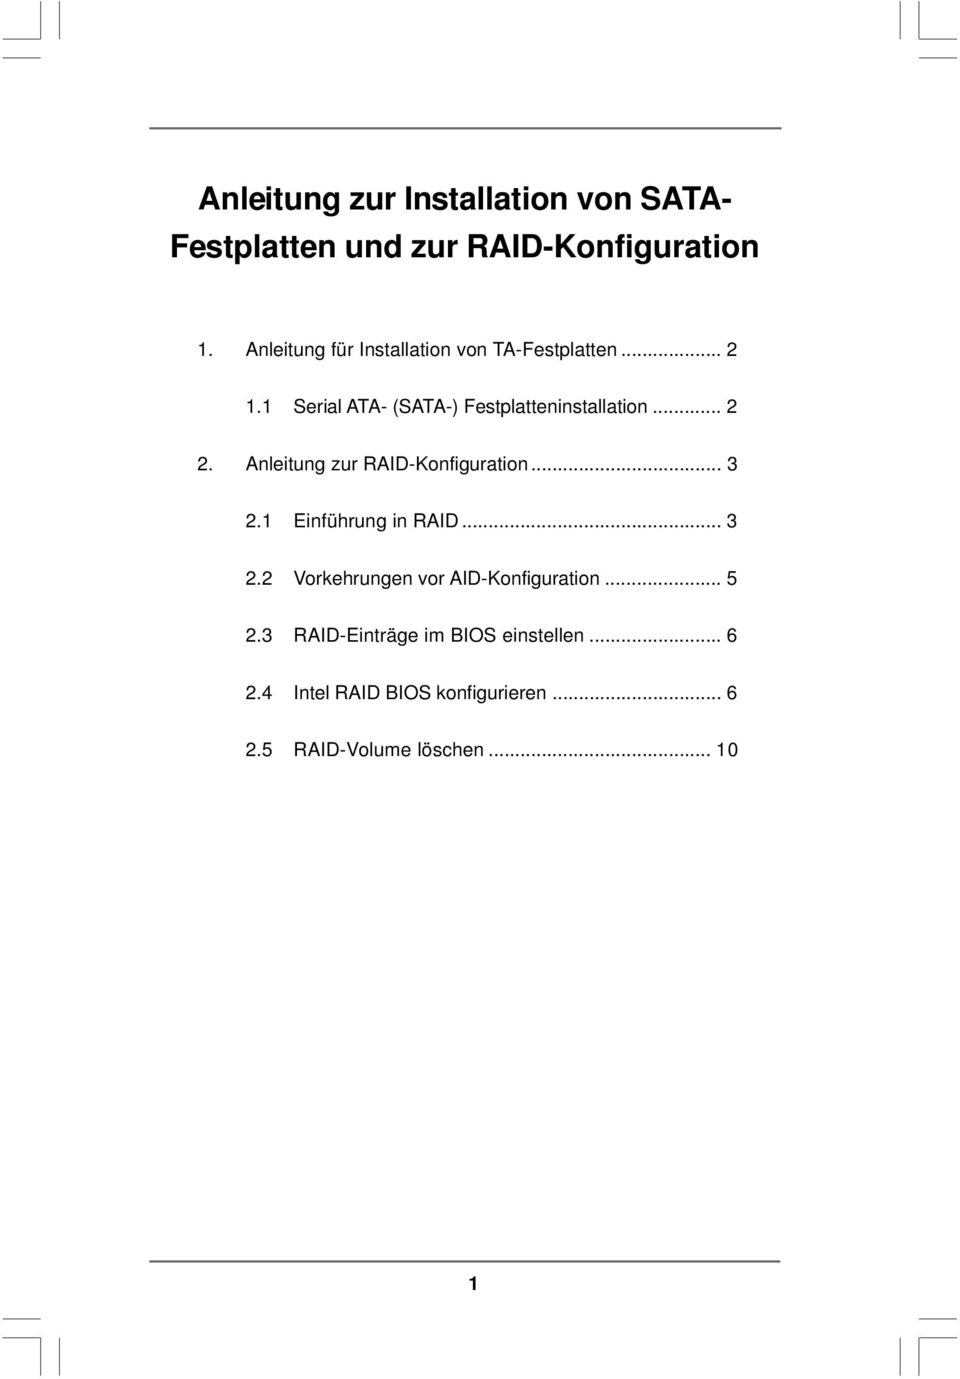 .. 2 2. Anleitung zur RAID-Konfiguration... 3 2.1 Einführung in RAID... 3 2.2 Vorkehrungen vor AID-Konfiguration.